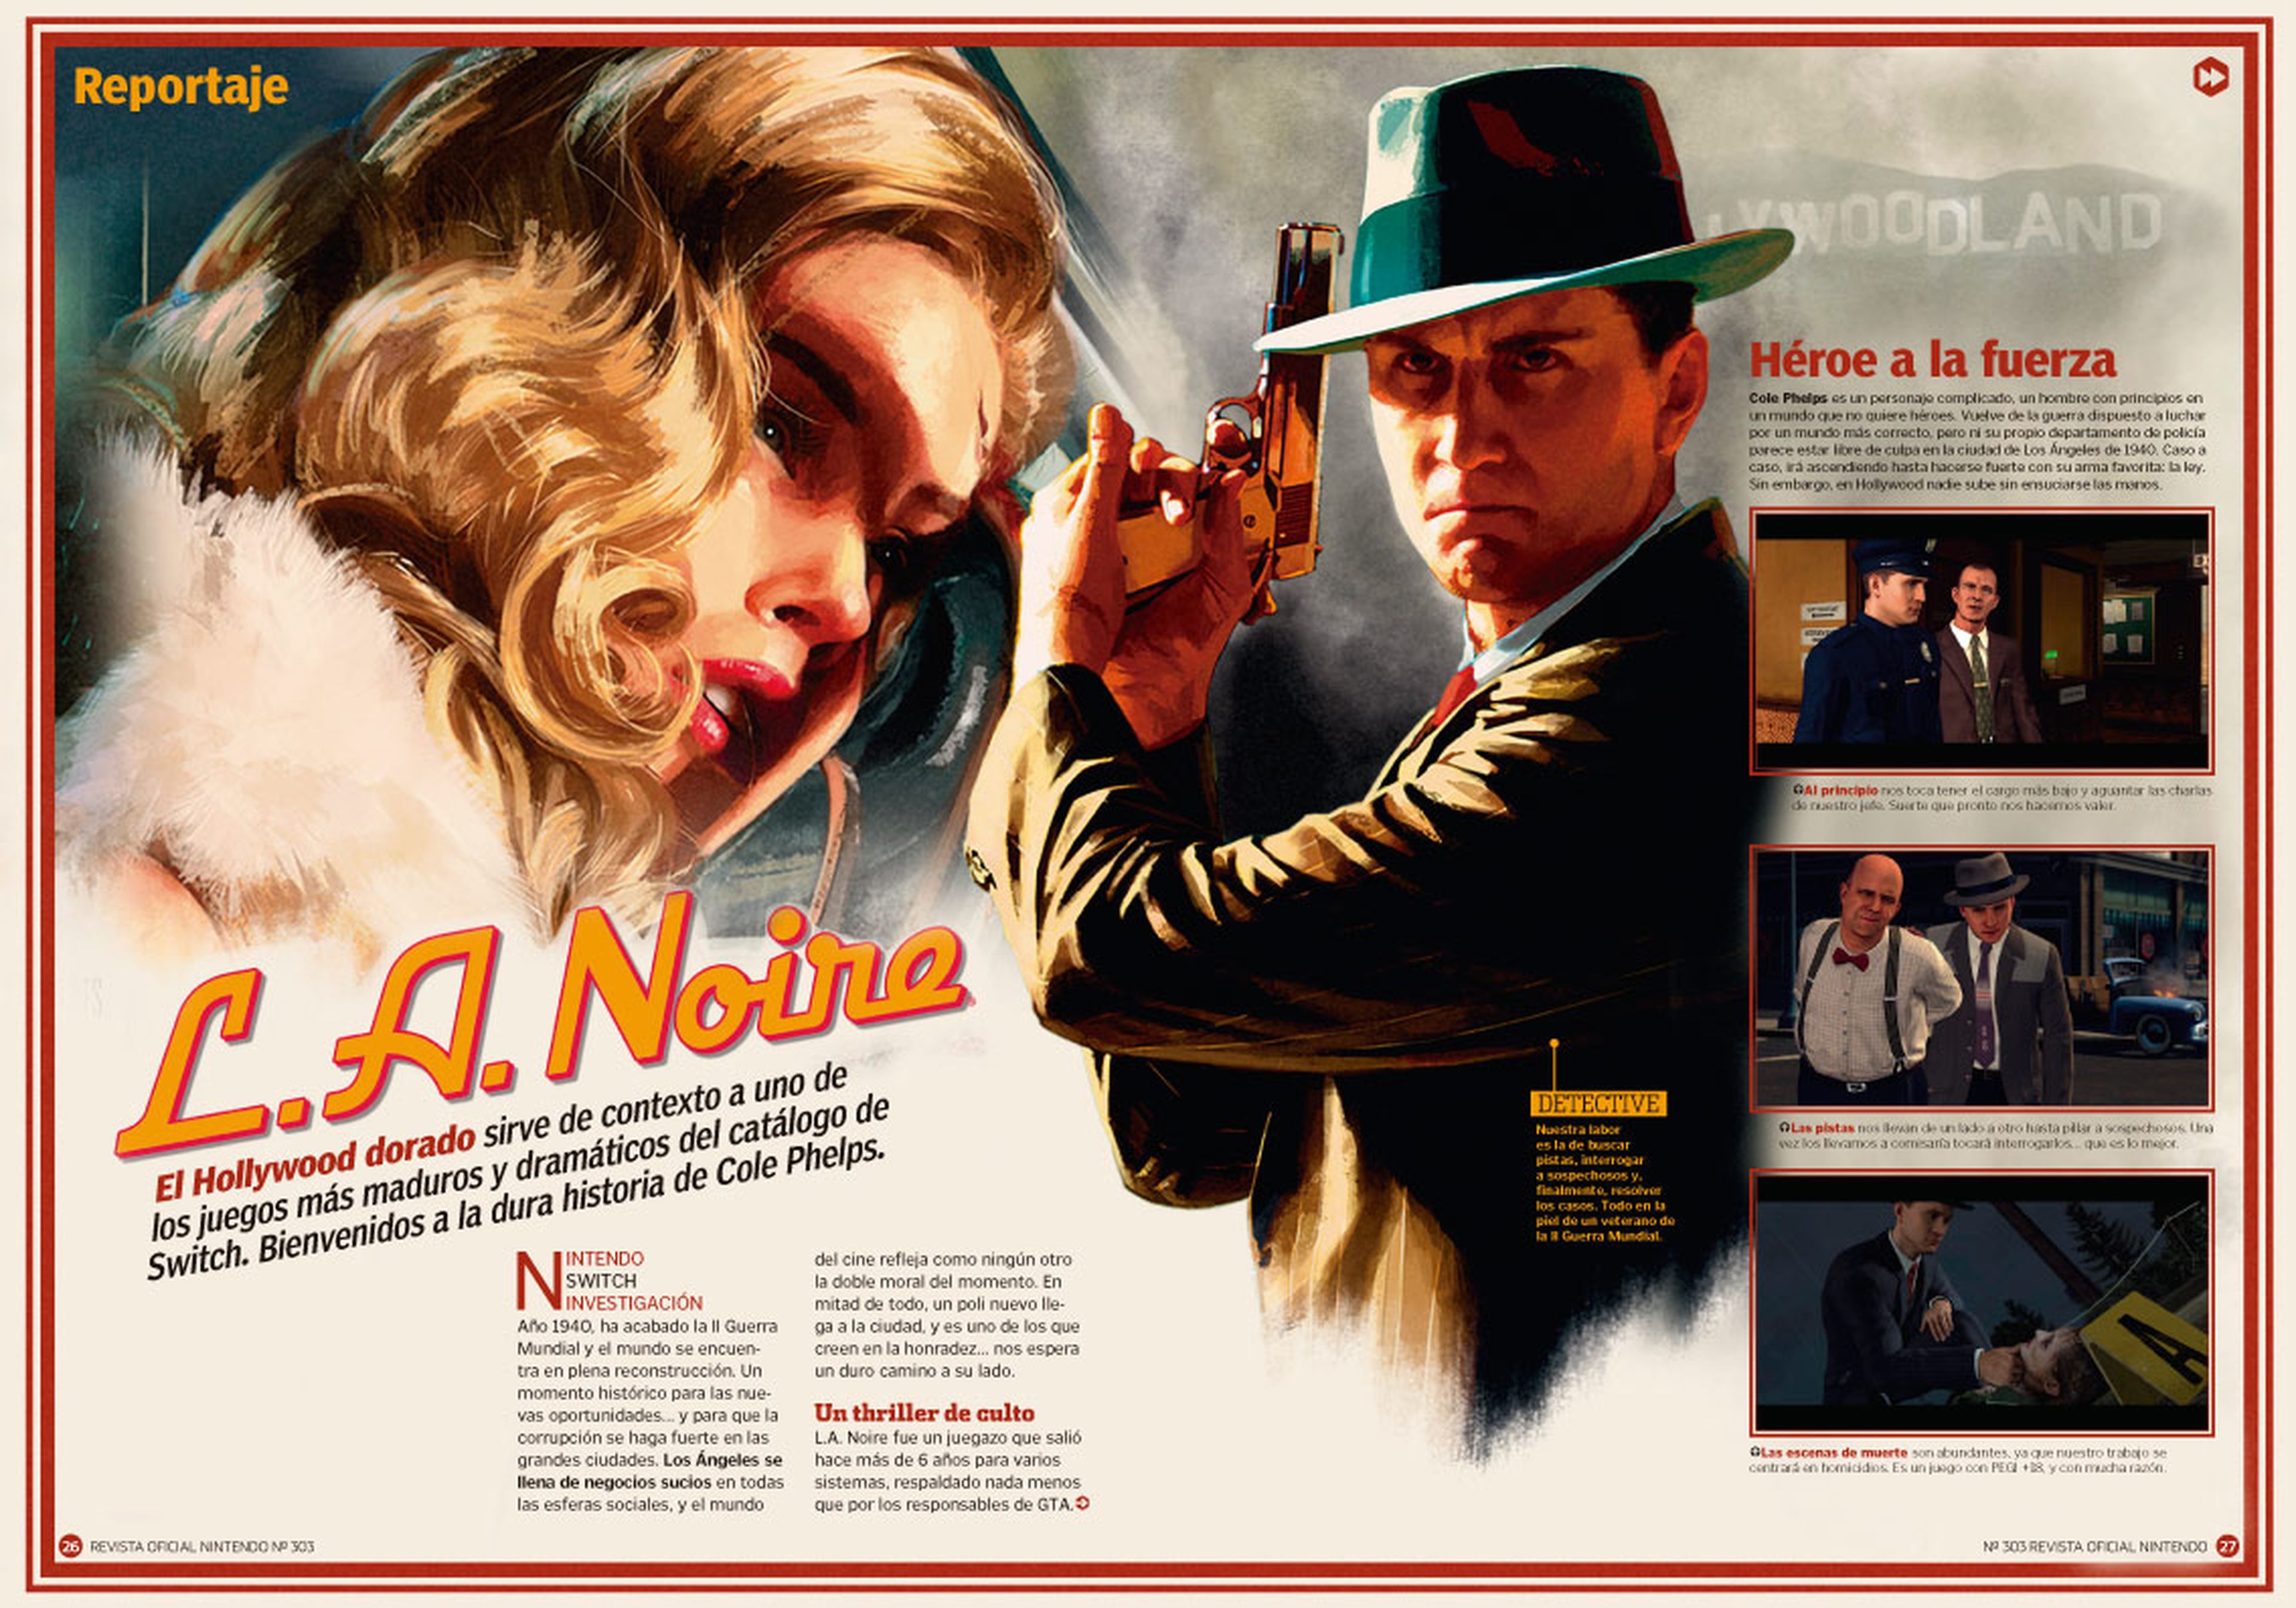 Reportaje L.A. Noire RON 303